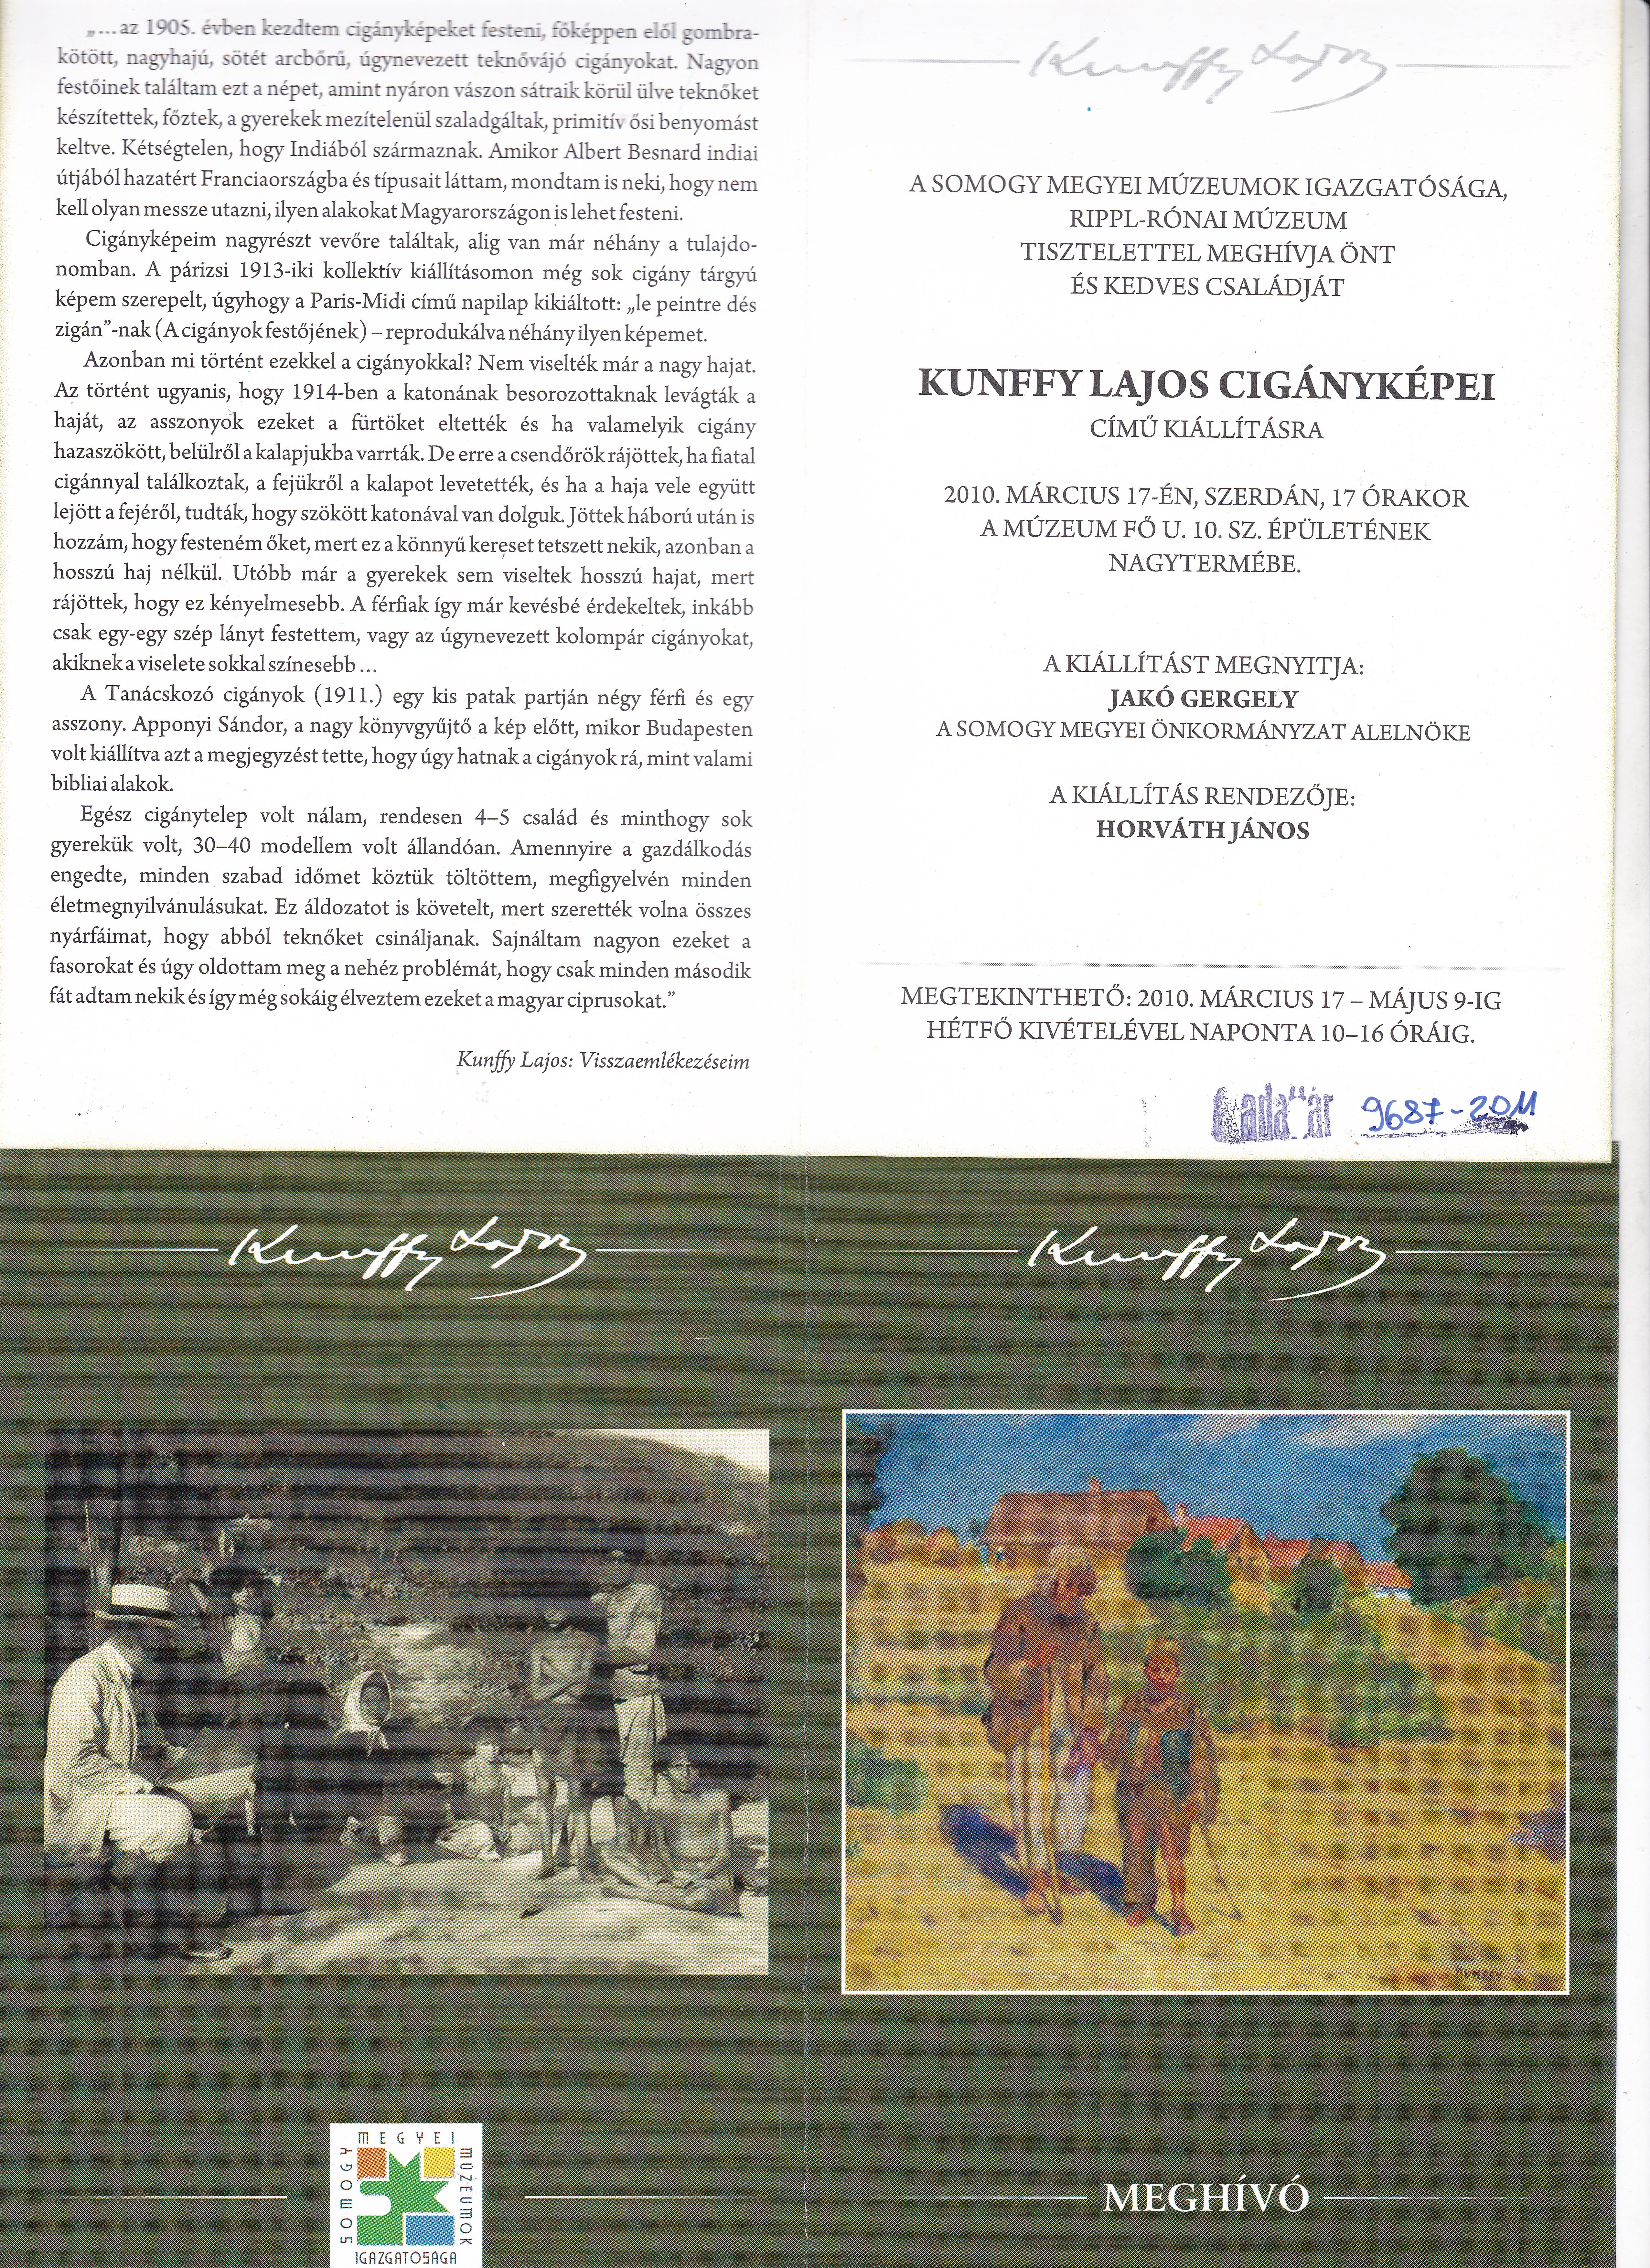 Kunffy Lajos Cigányképei című kiállításra (Rippl-Rónai Múzeum CC BY-NC-ND)